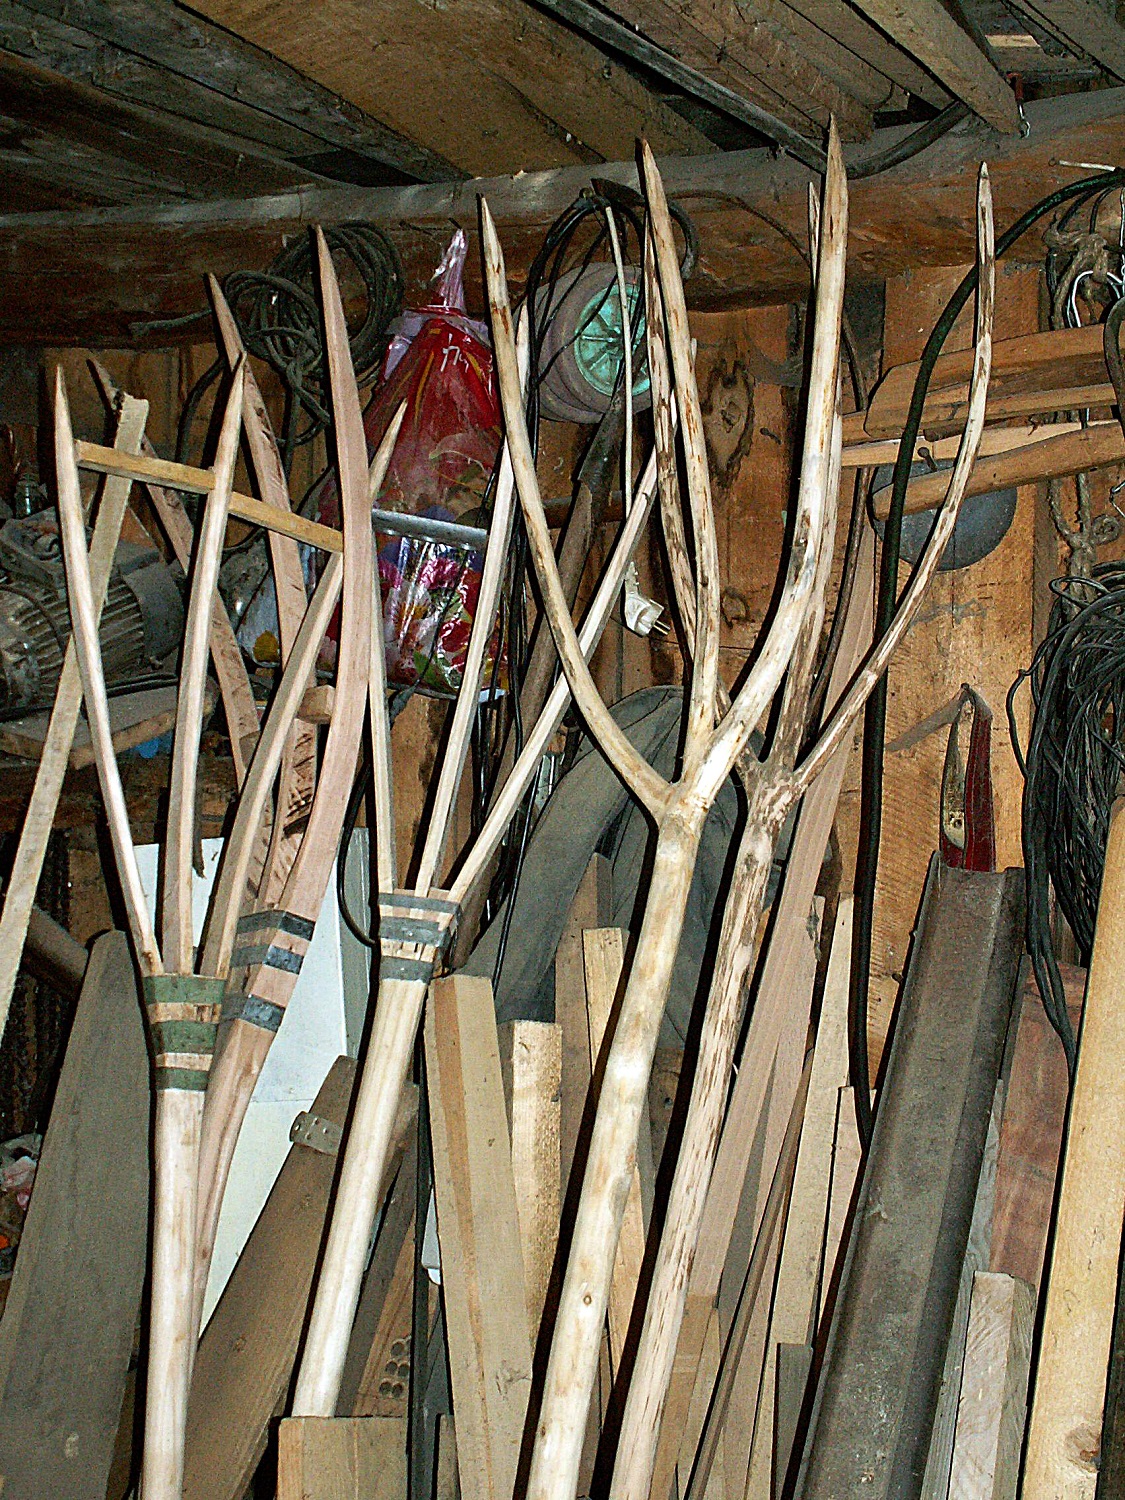 Les outils traditionnels en bois sont encore utilisés, comme ici des fourches pour ramasser le foin. crédits Anamaria Luga